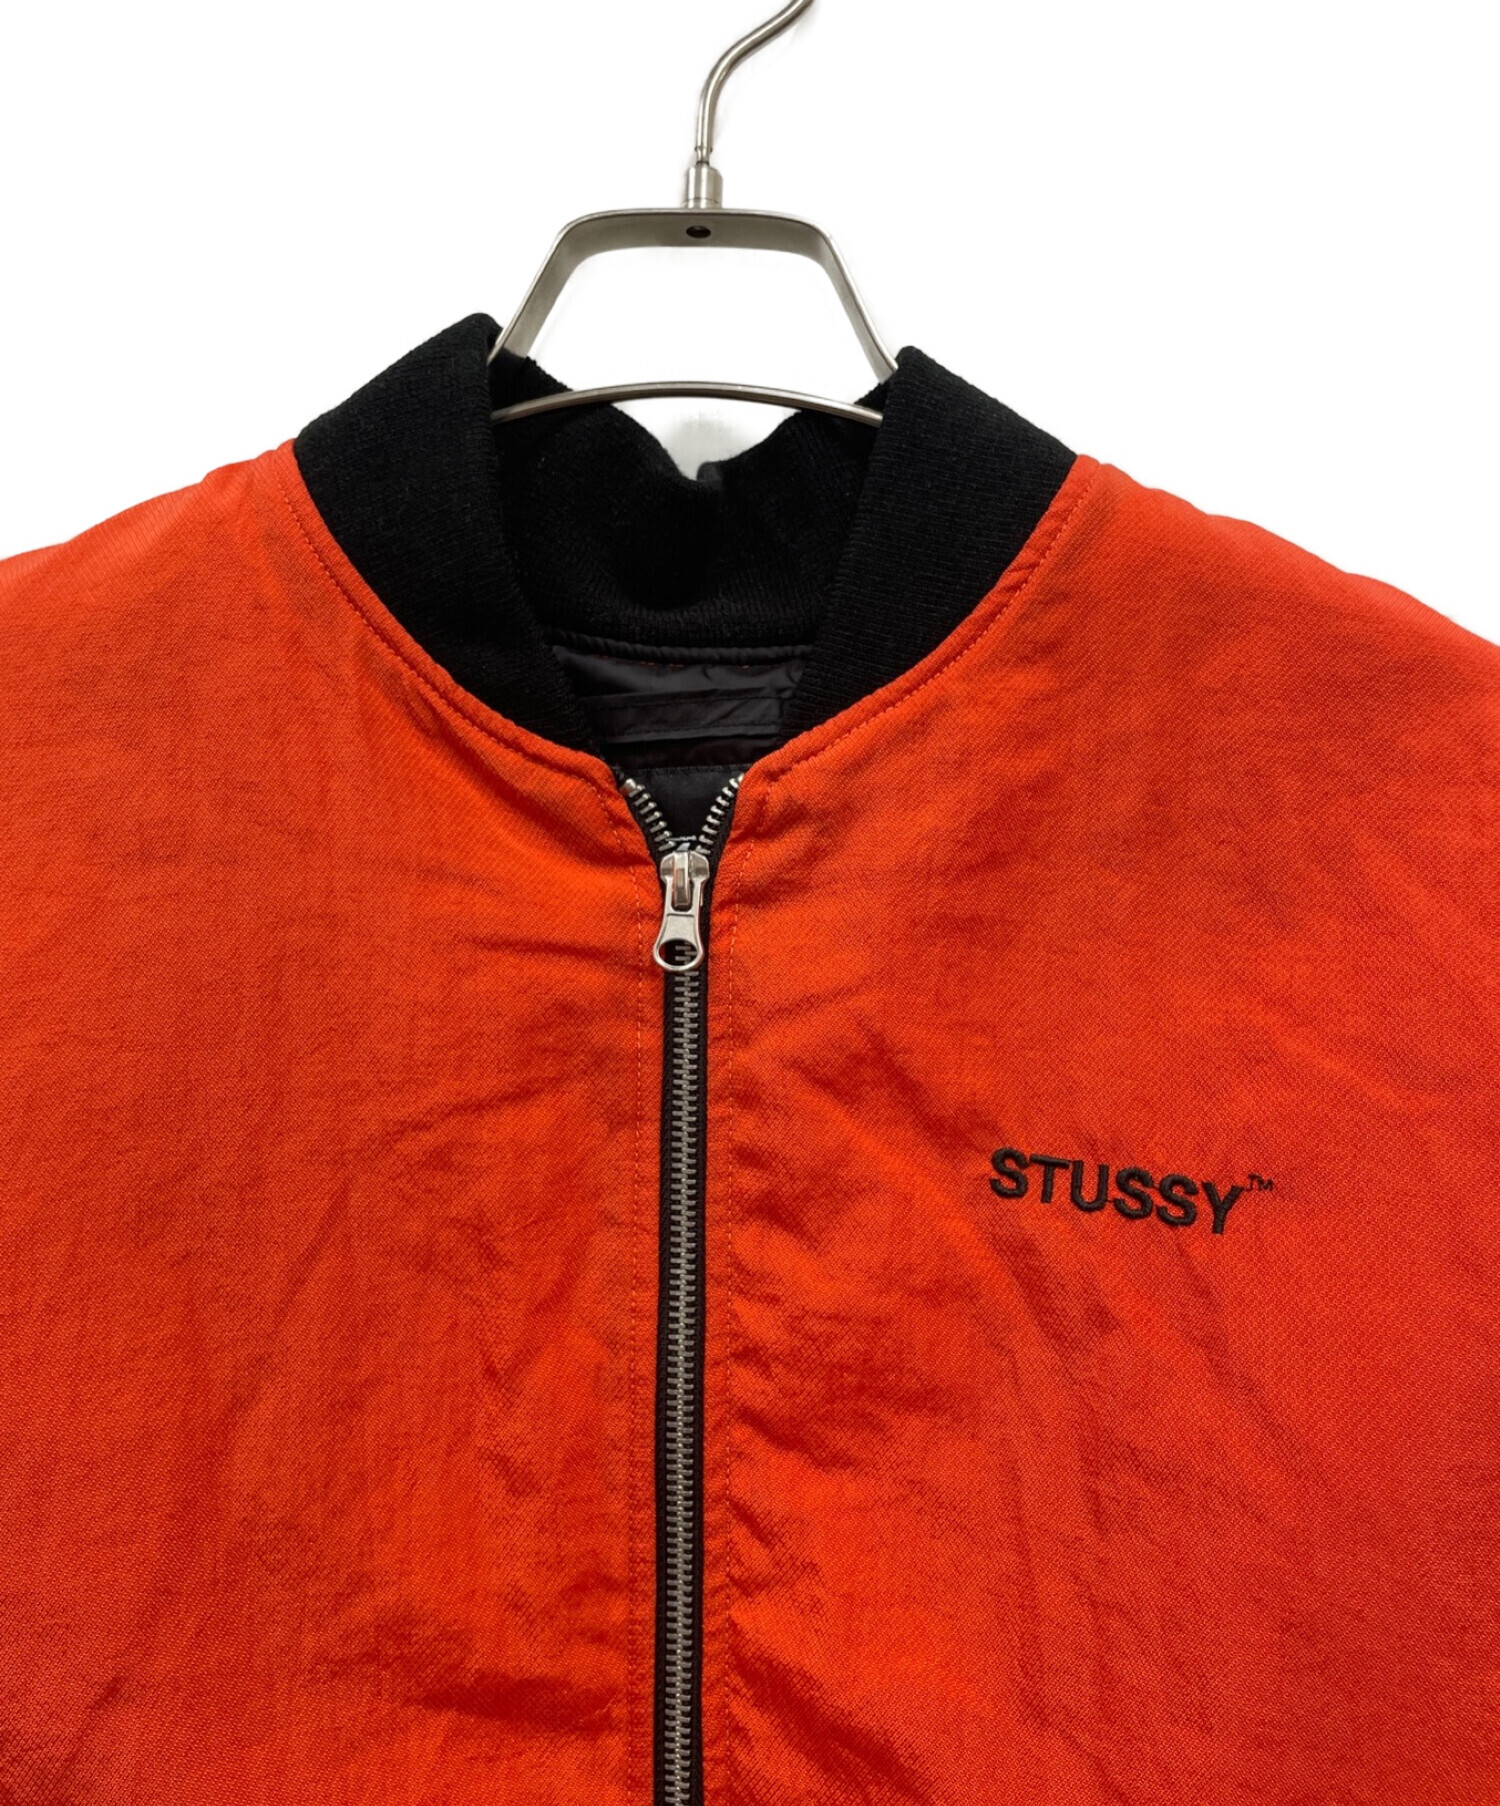 stussy (ステューシー) フライトジャケット/MA1ジャケット オレンジ サイズ:M